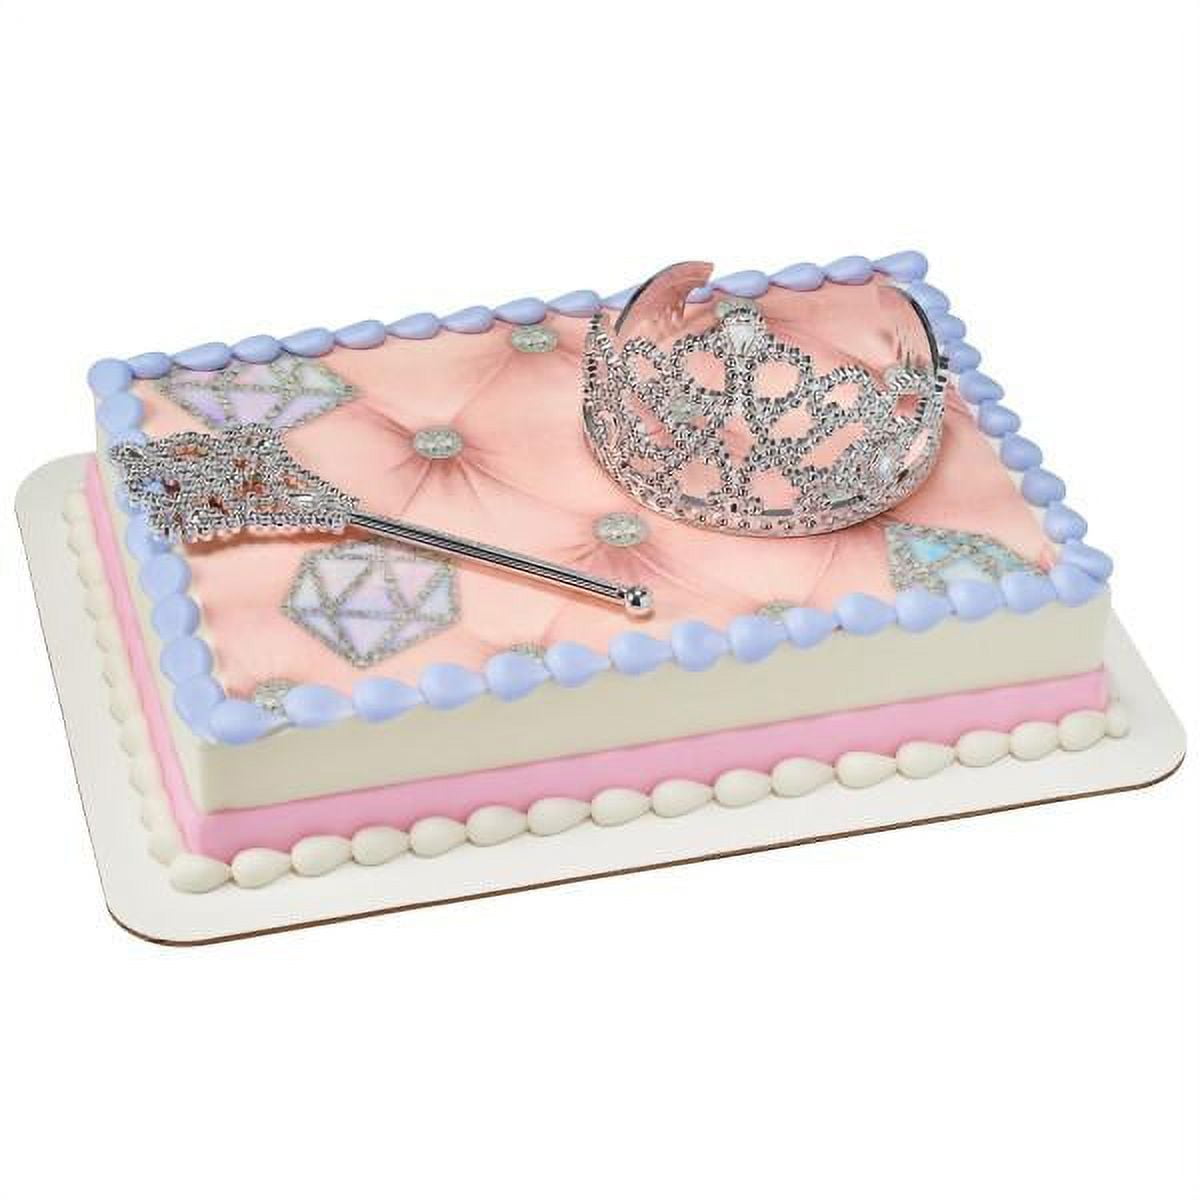 Bolo Rosa com glitter  Pretty birthday cakes, Glitter cake ideas, Barbie  doll birthday cake